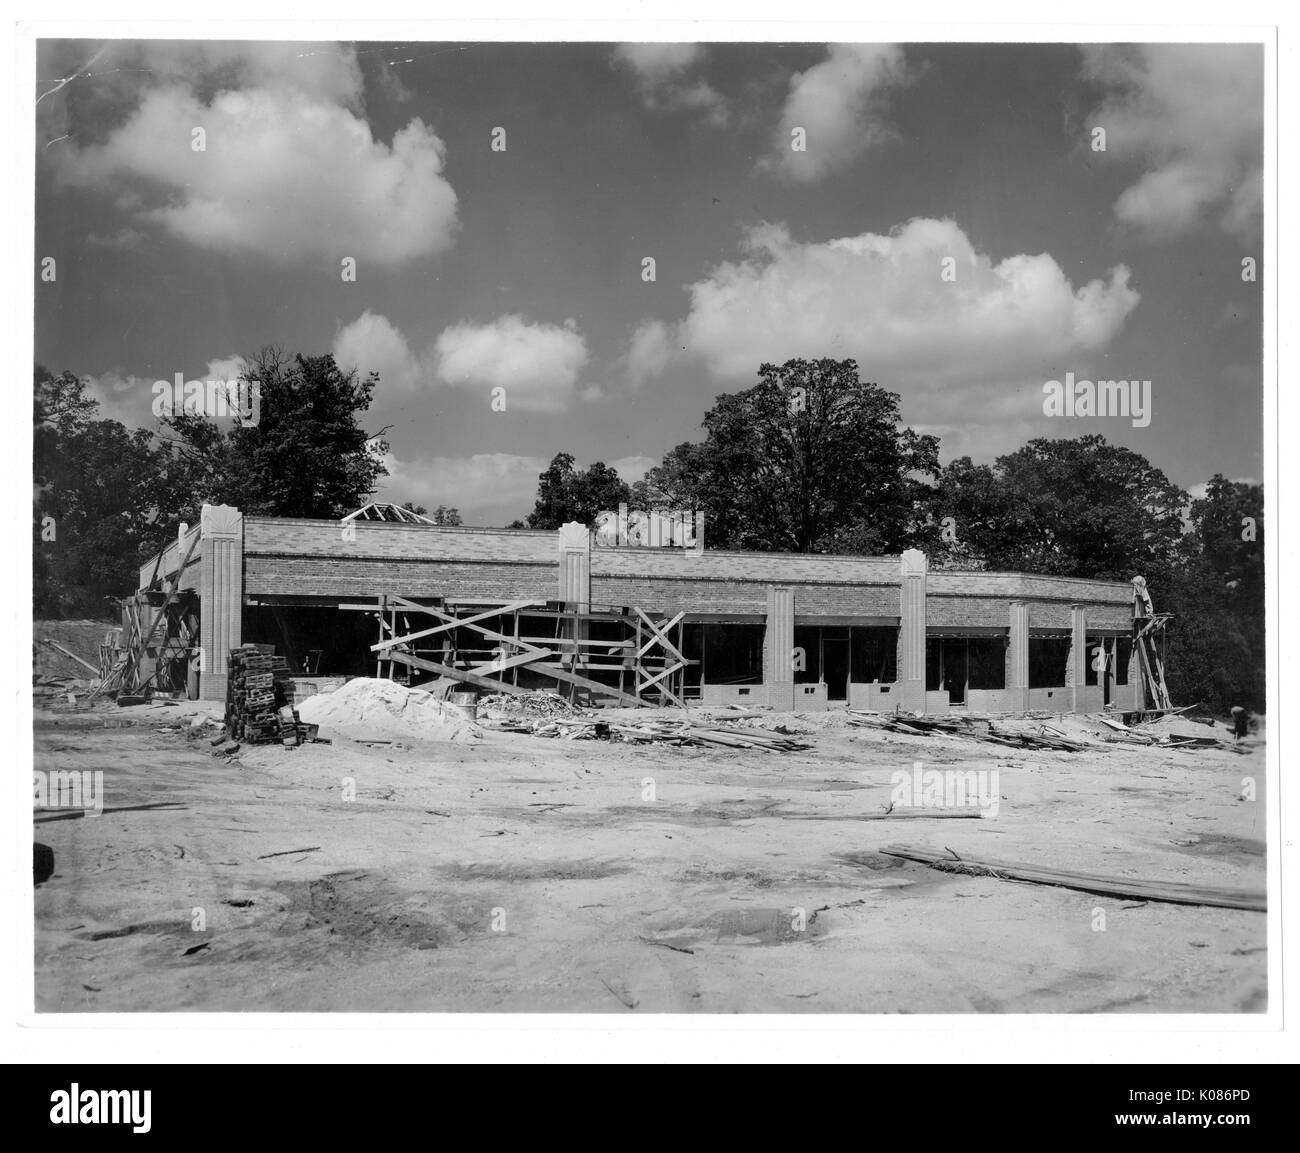 Bâtiment de Baltimore Roland Park en construction, entouré de nombreux arbres, abattu lors d'une journée ensoleillée, tas de bois autour de l'édifice, et tas de terre autour de la structure, Baltimore, Maryland, 1920. Banque D'Images